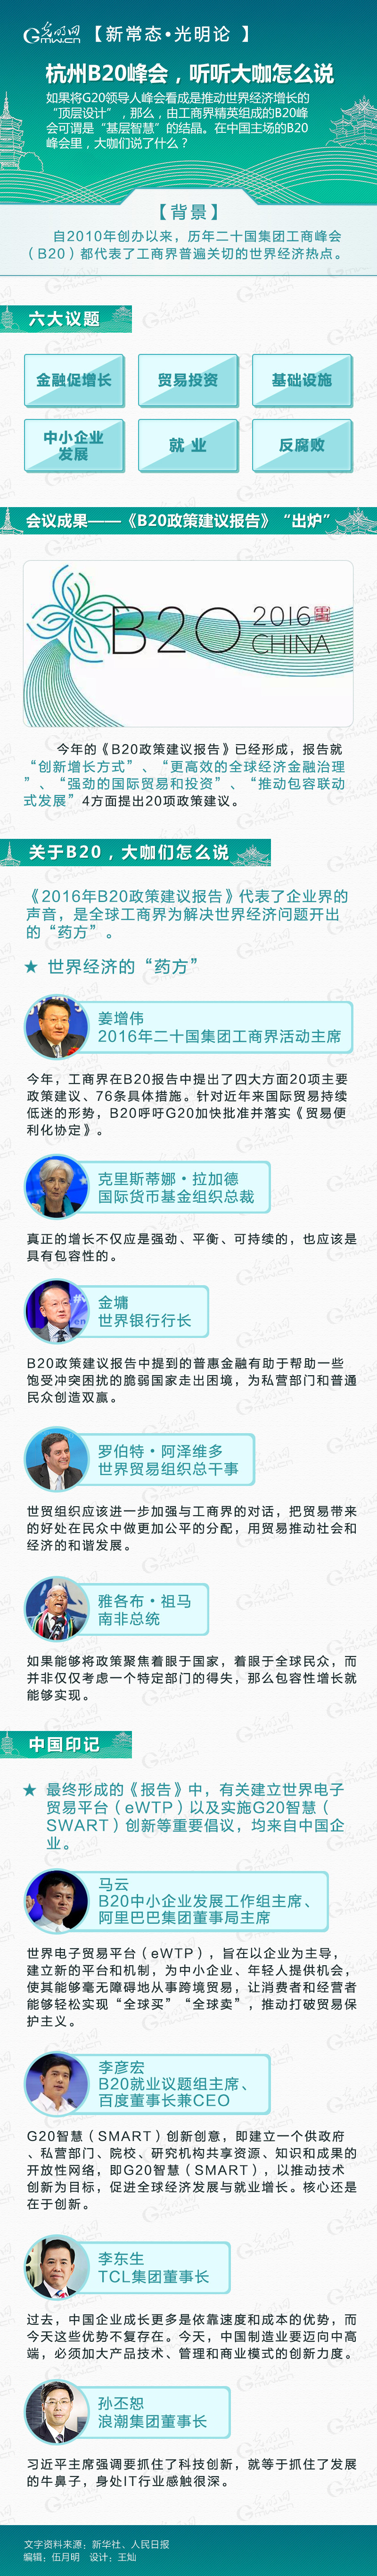 【新常态 光明论】杭州B20峰会听听大咖怎么说